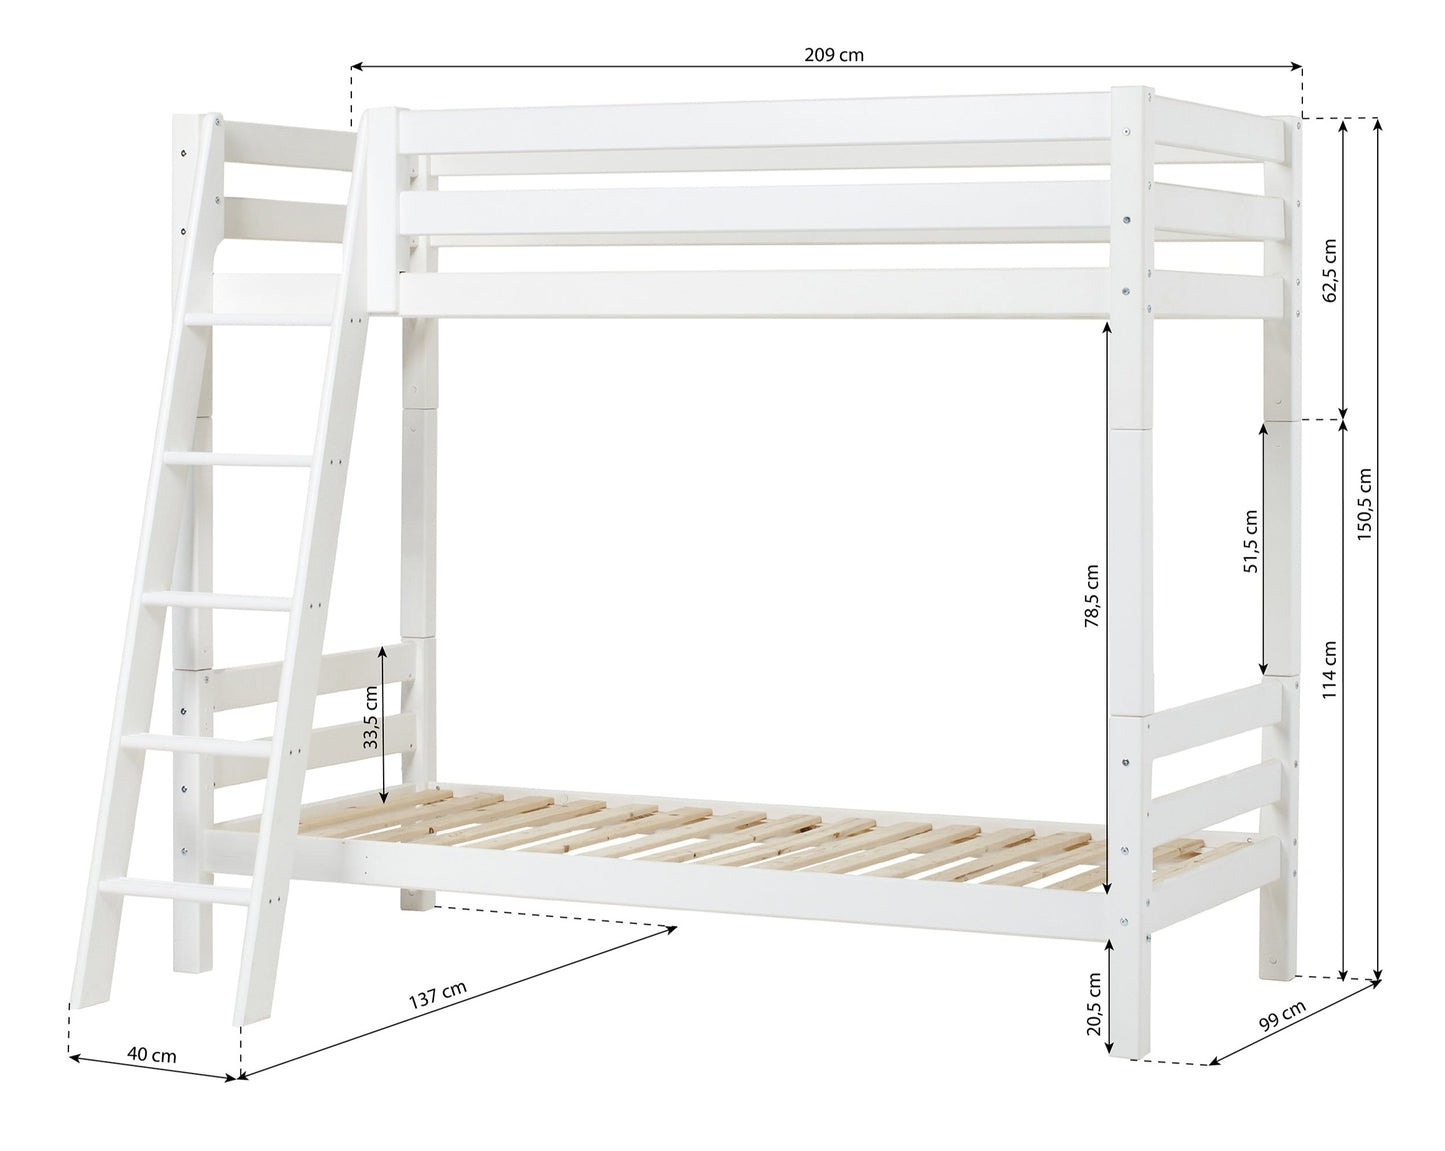 ECO Luxury - Высокая двухъярусная кровать с наклонной лестницей - 90x200 см - Белый